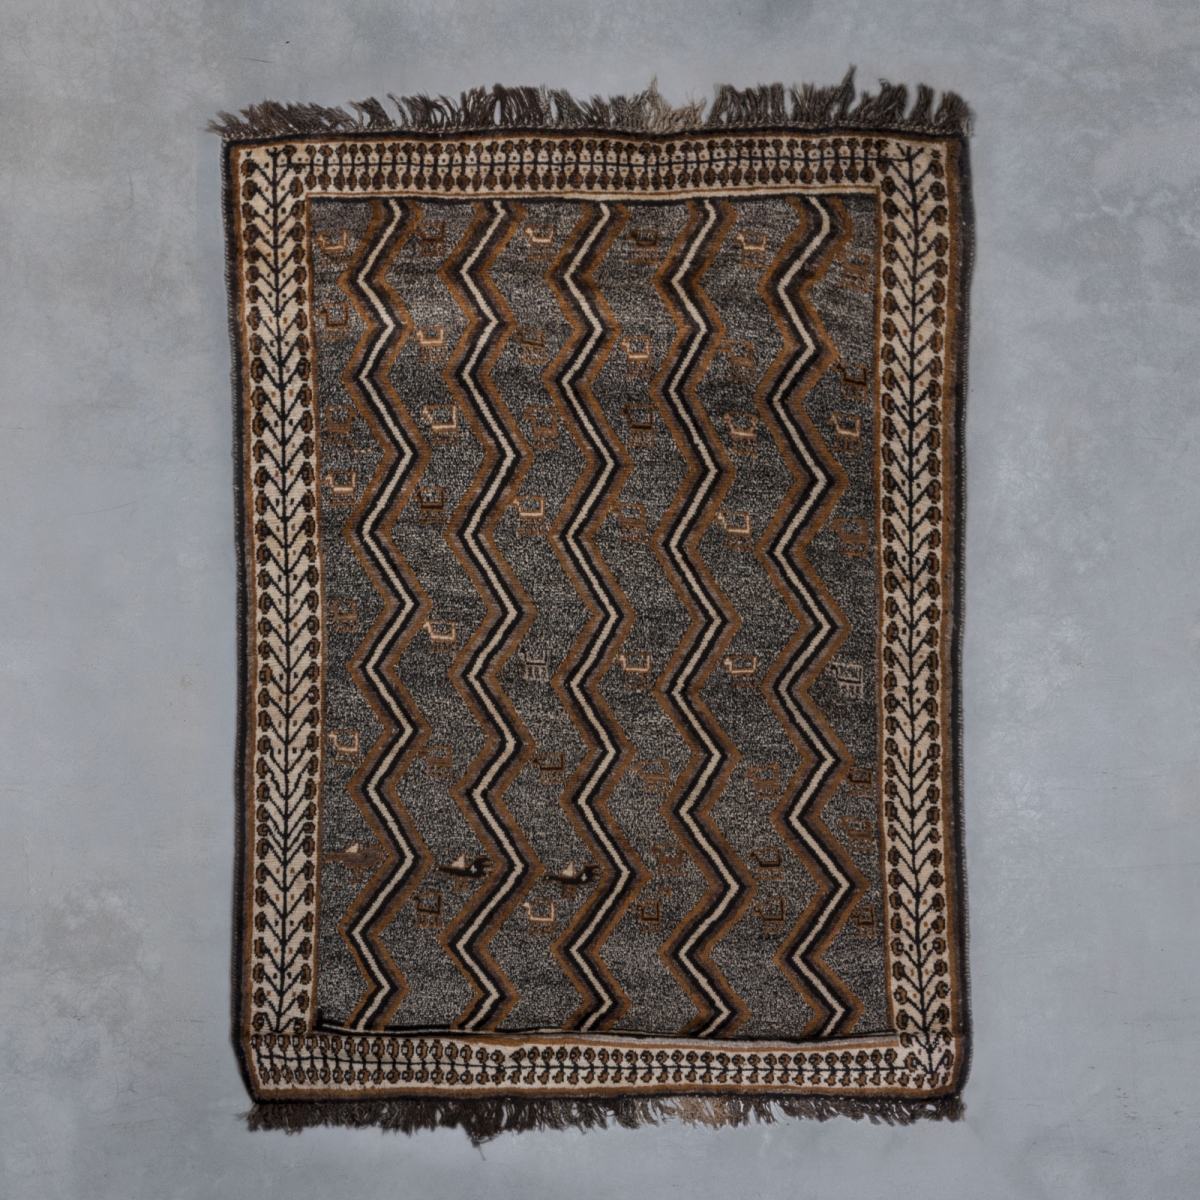 Gabbeh carpet | 183 x 145 cm  Antique carpets - Persia  pic-1